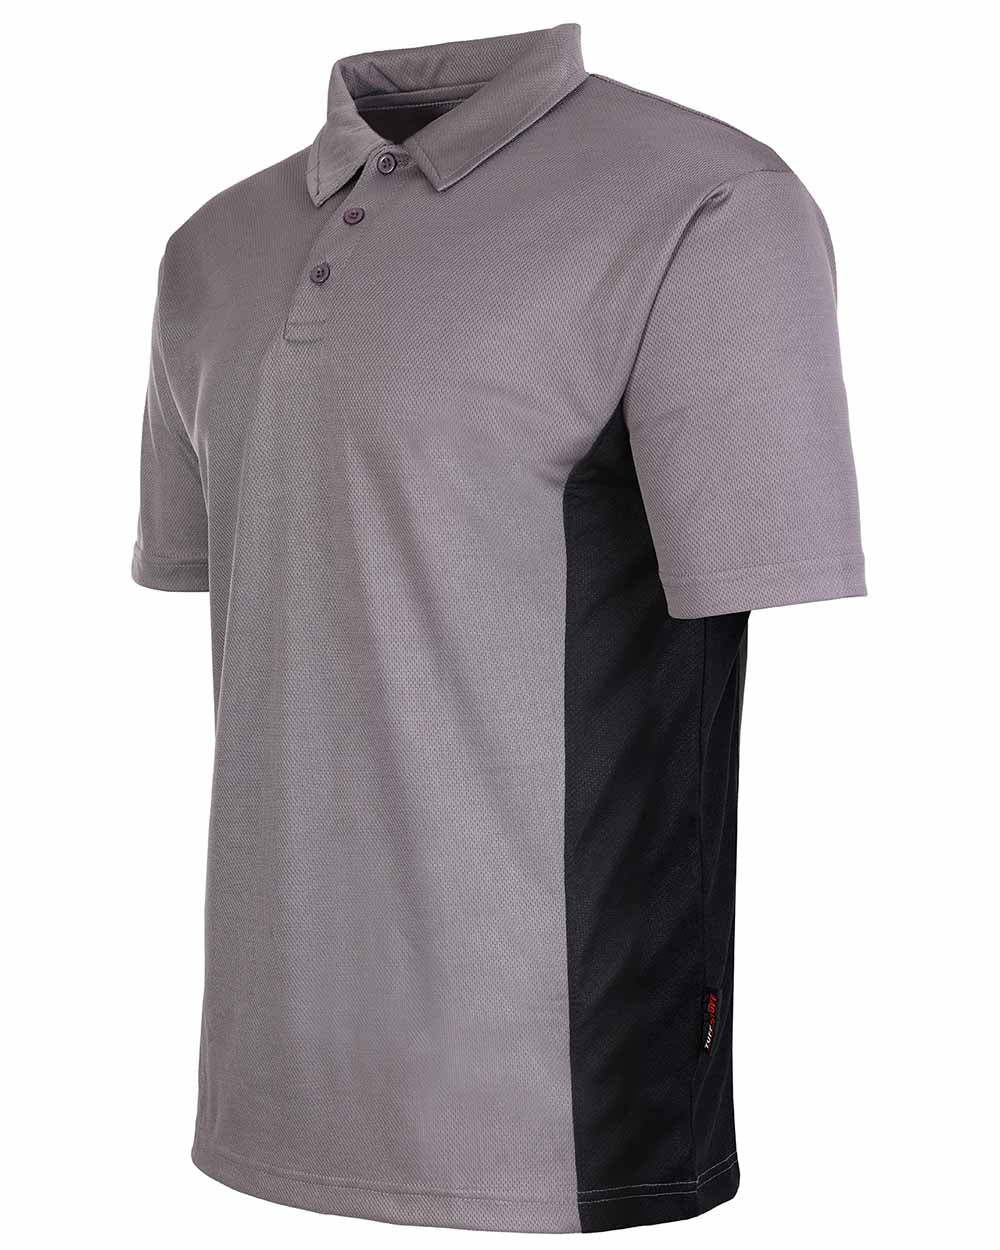 Grey Coloured TuffStuff Elite Polo Shirt On A White Background 